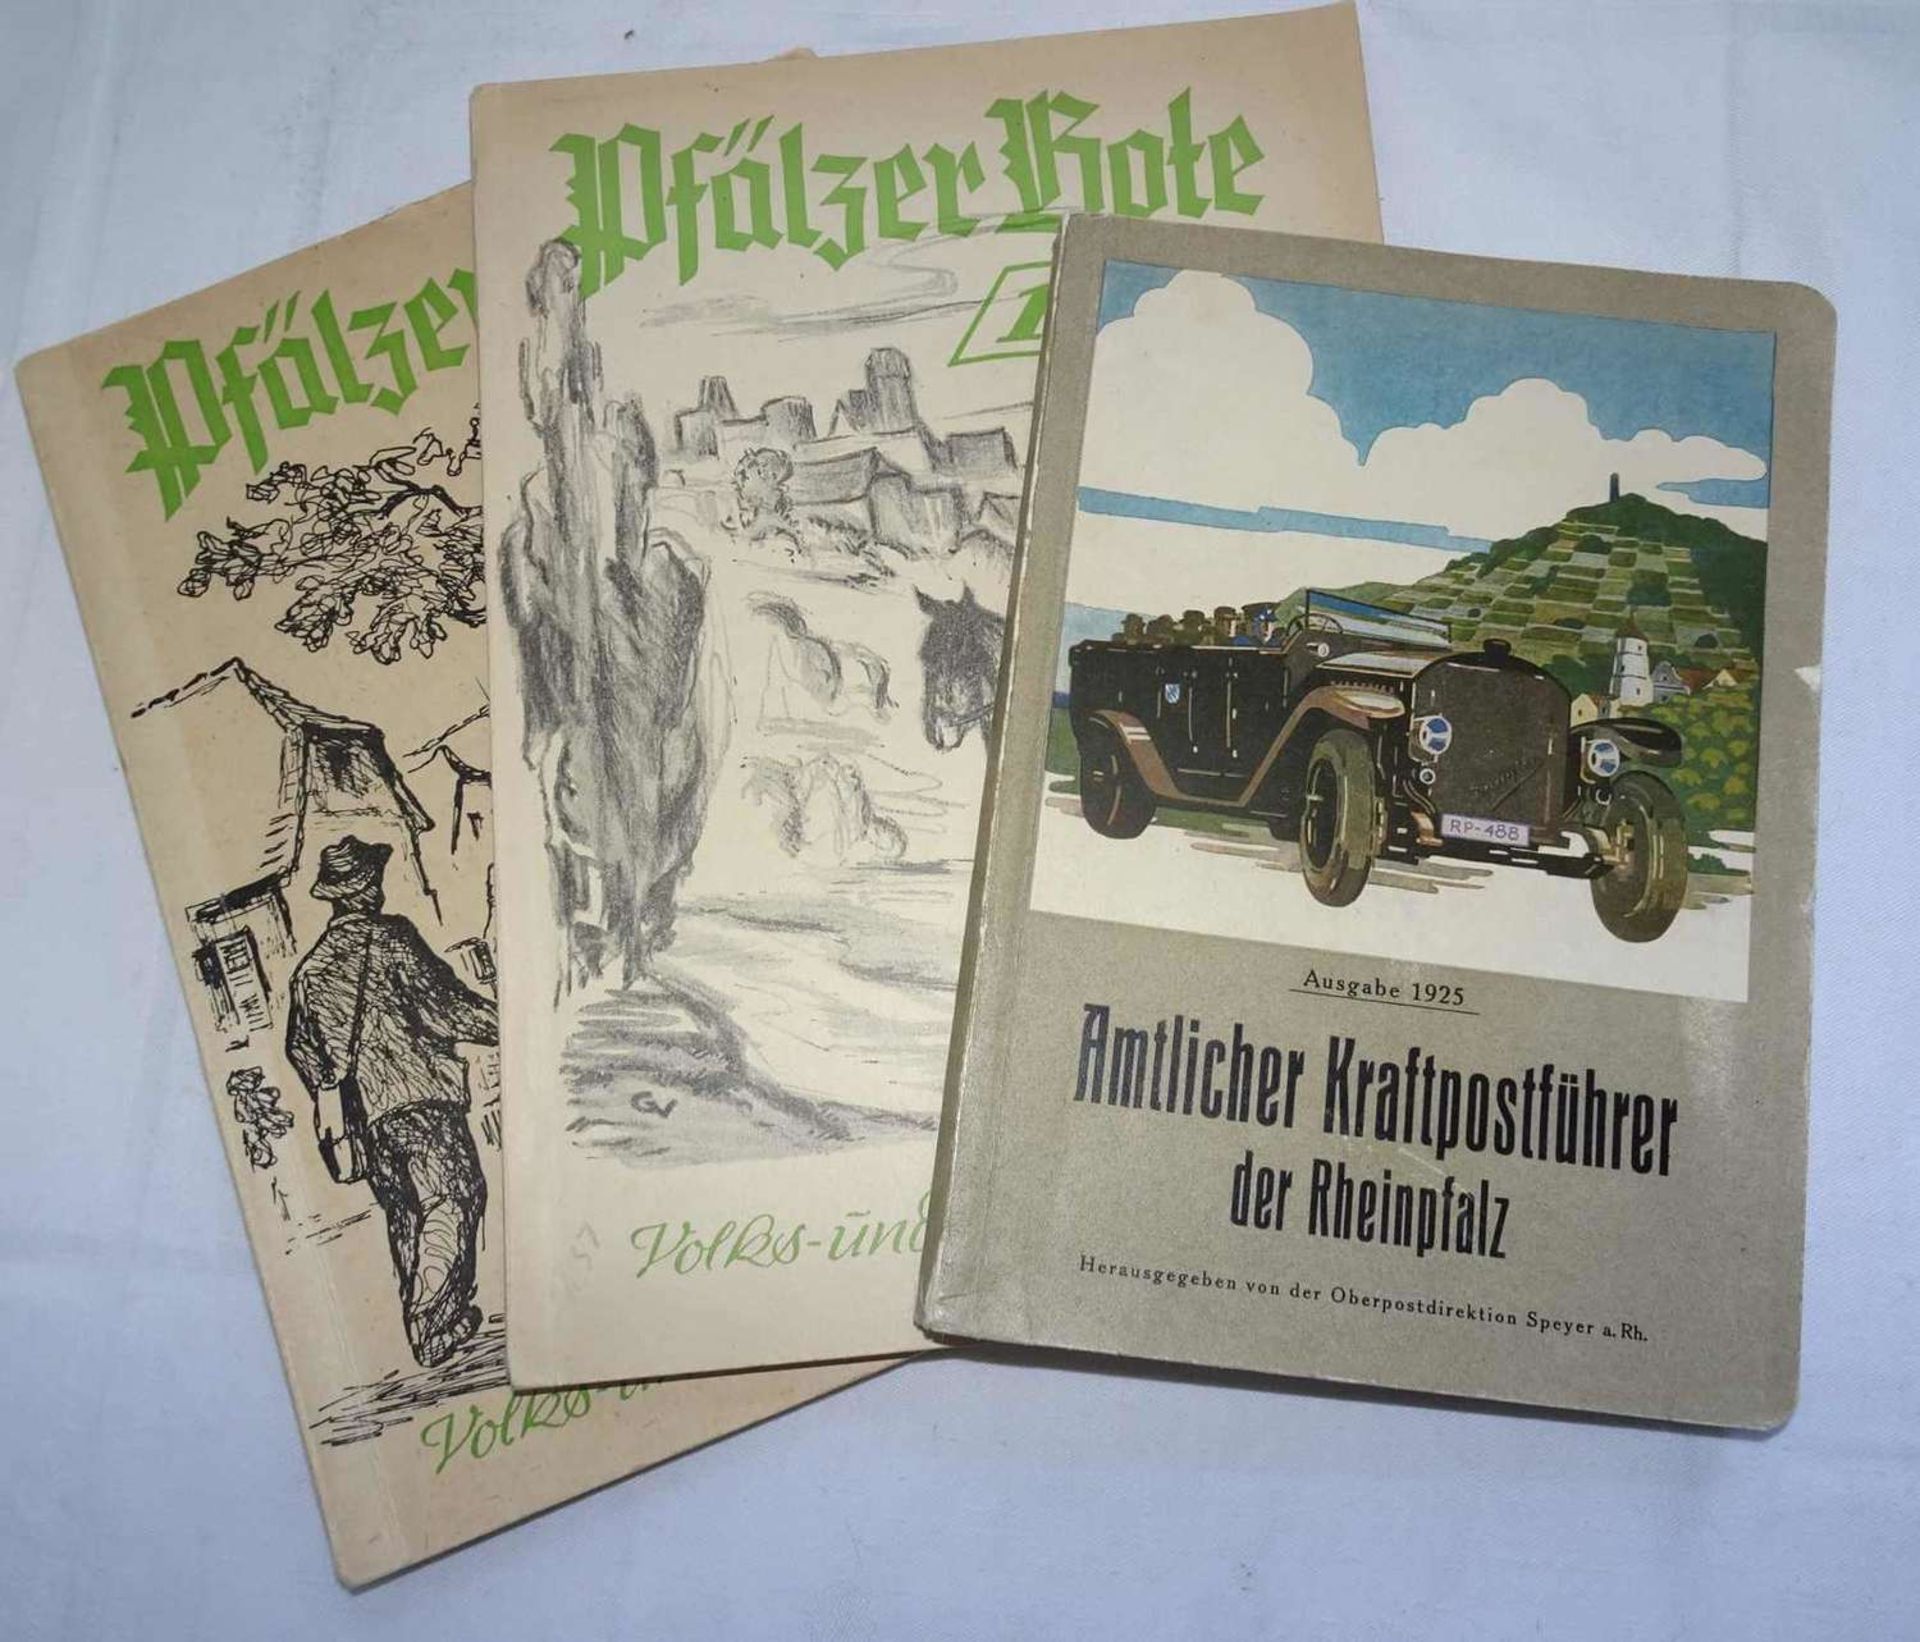 3 Bücher Pfalz, dabei amtlicher Kraftpostführer der Rheinpfalz, Ausgabe 1925, sowie 2x der "